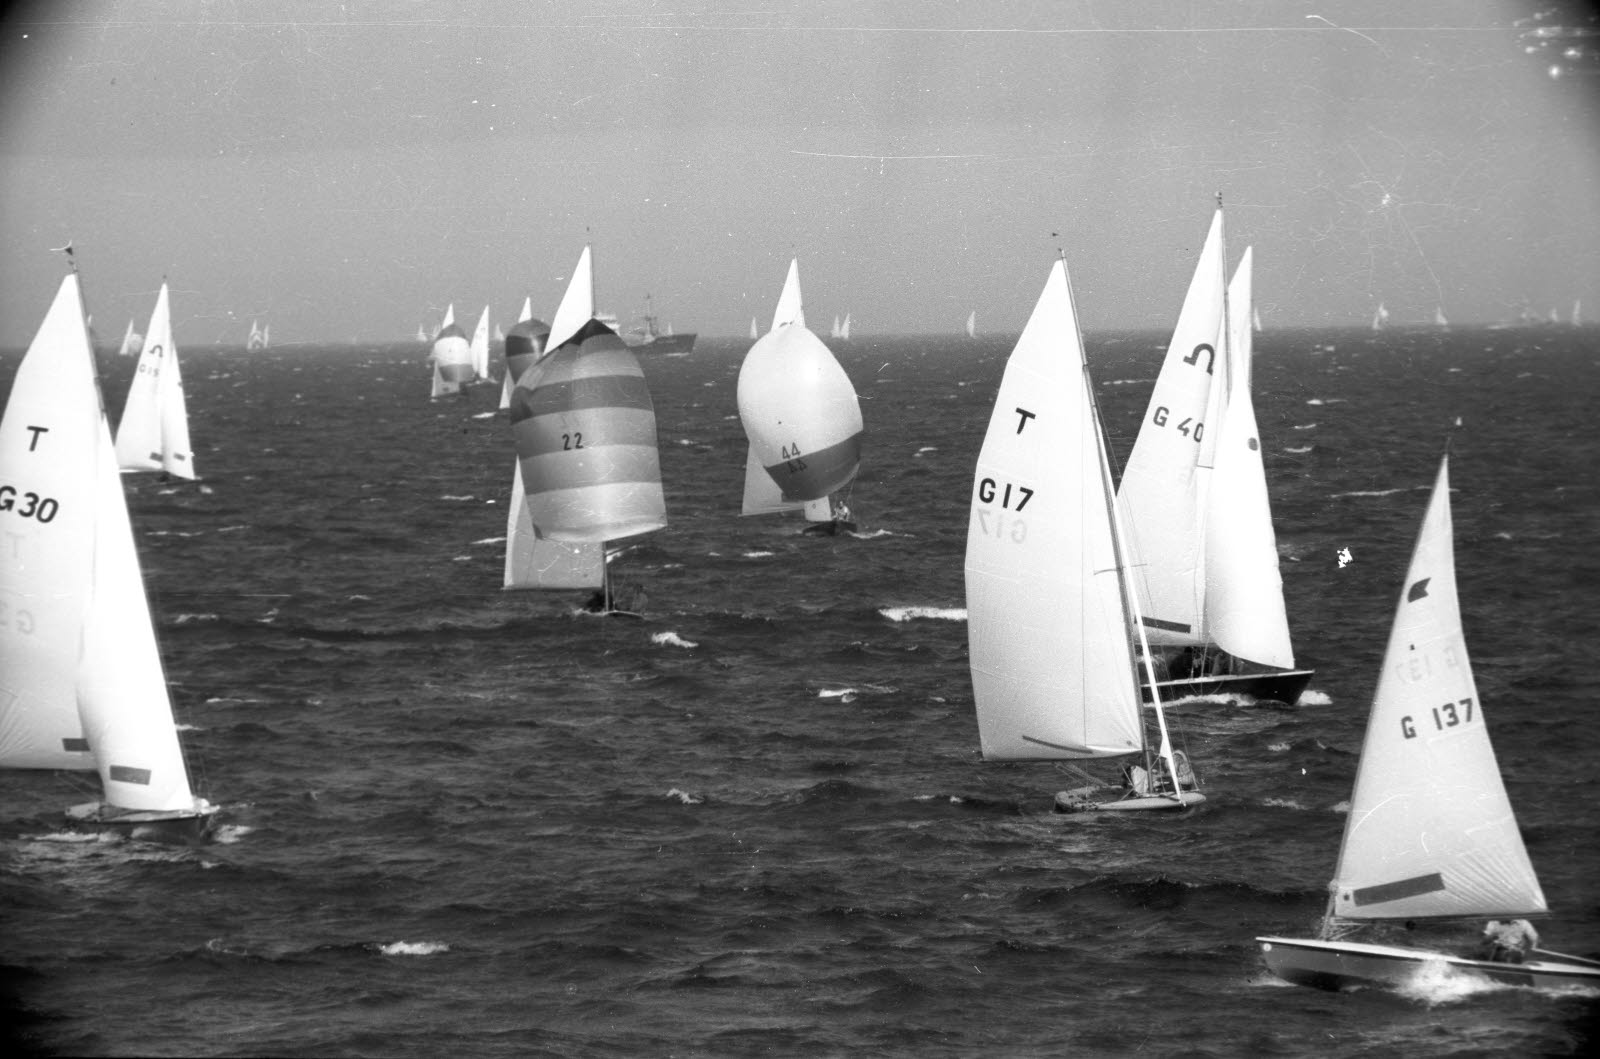 Regatta der Klassen Soling und Tempest vor Schilksee zur Kieler Woche 1970